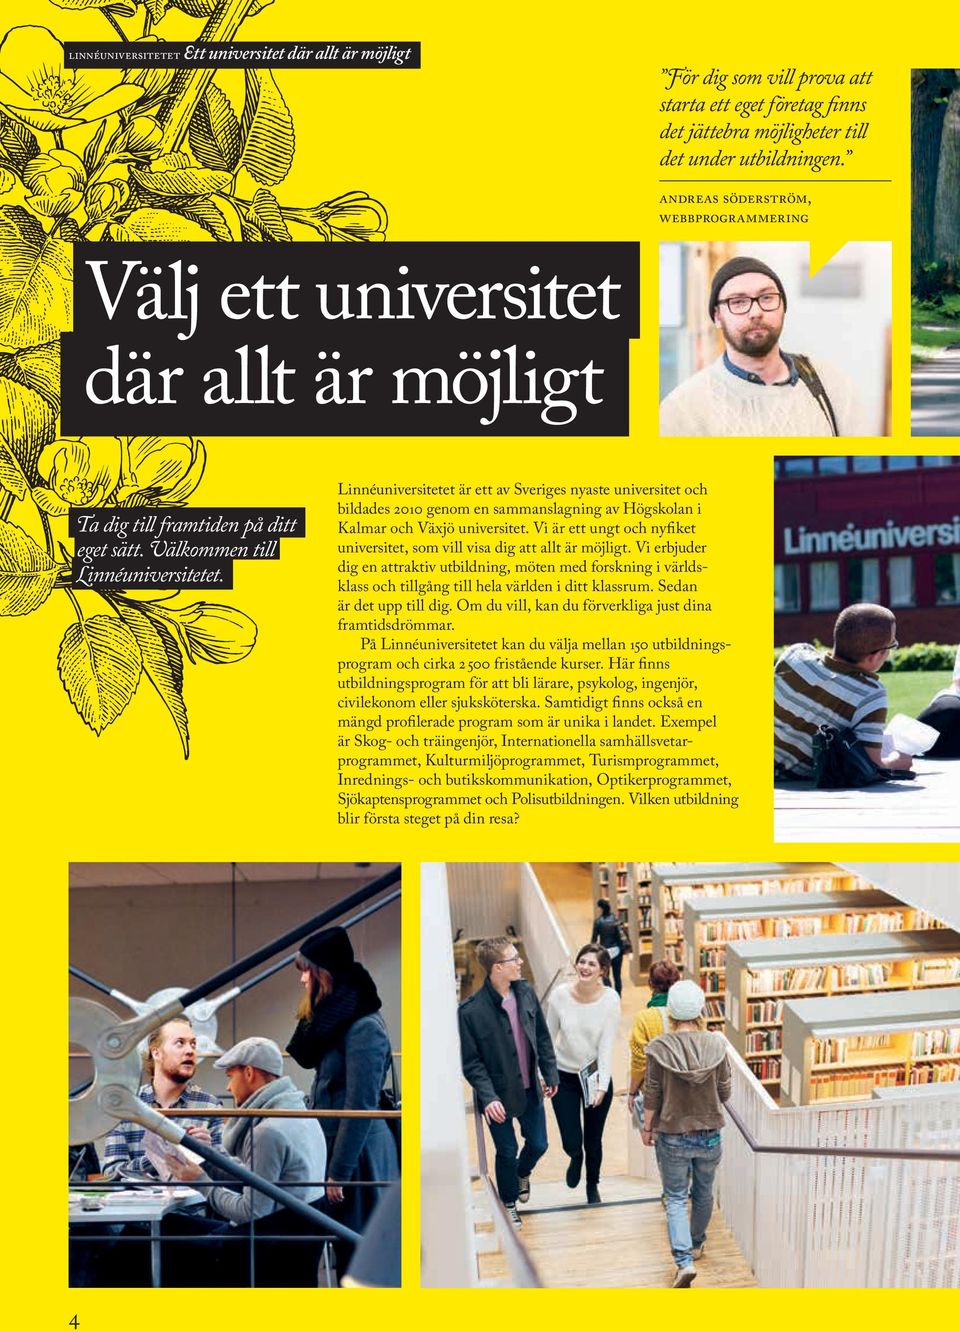 Linnéuniversitetet är ett av Sveriges nyaste universitet och bildades 2010 genom en sammanslagning av Högskolan i Kalmar och Växjö universitet.